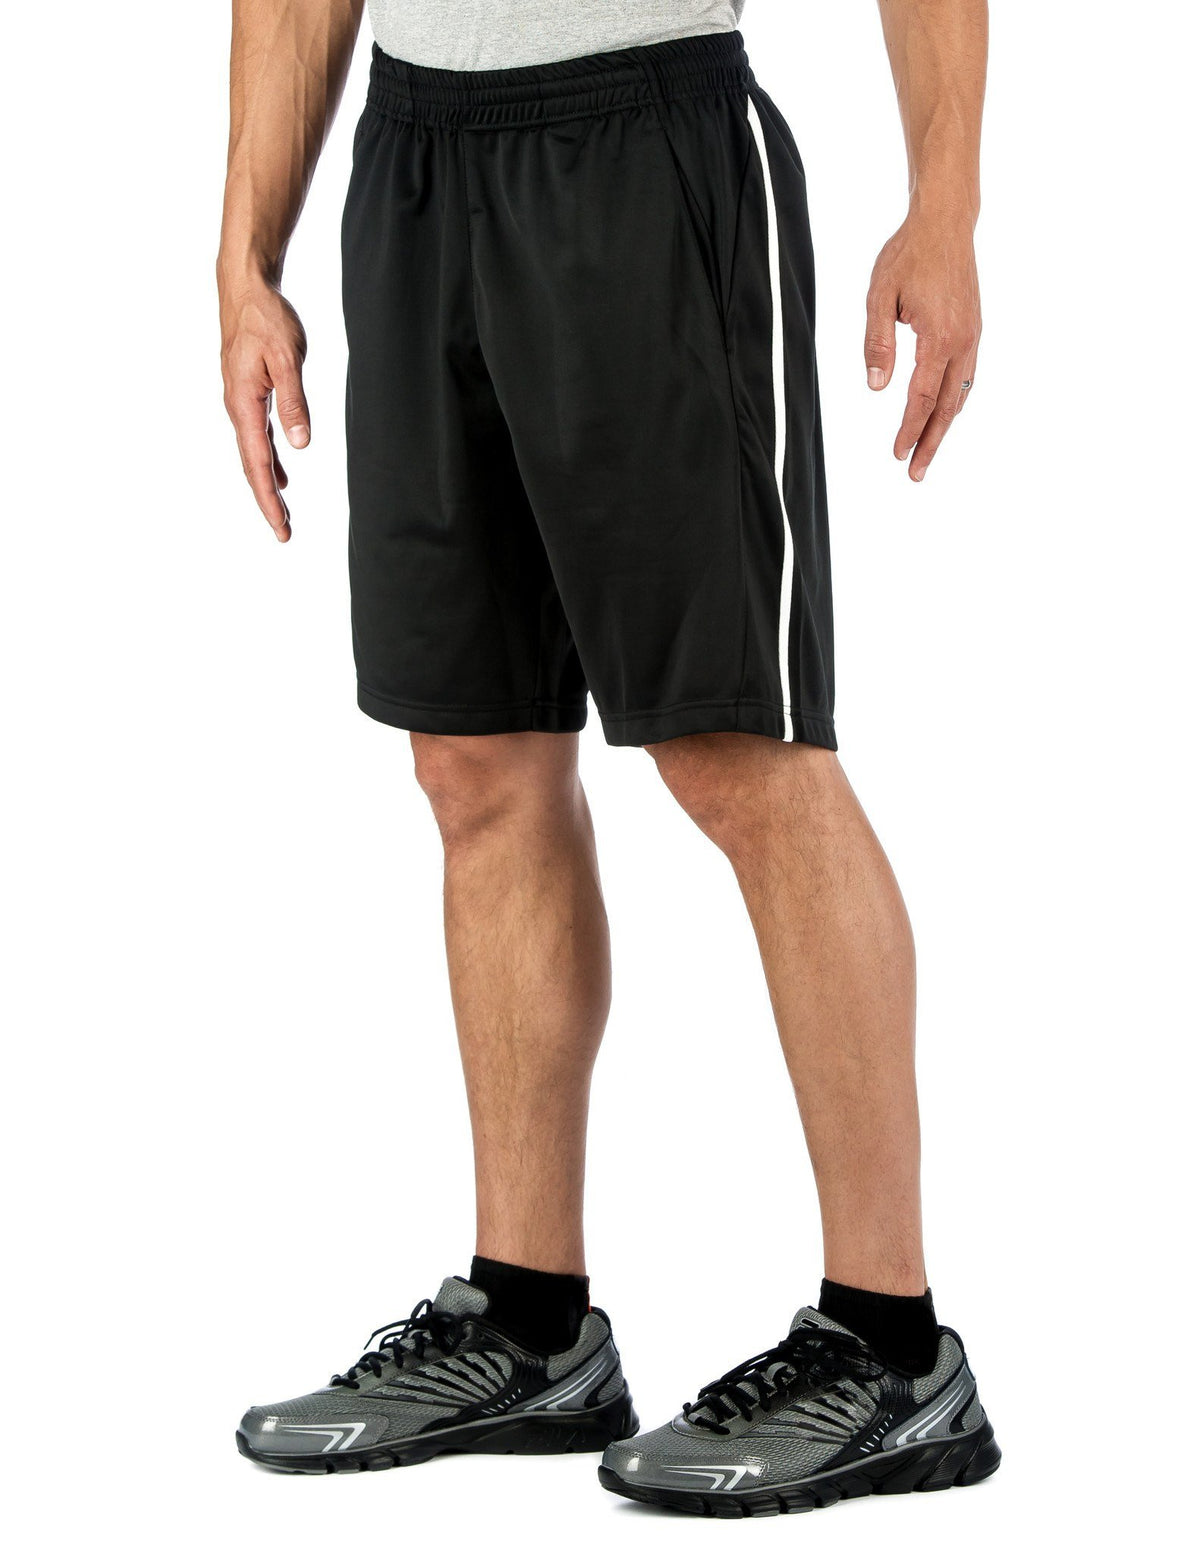 Men's Active Shorts - Black